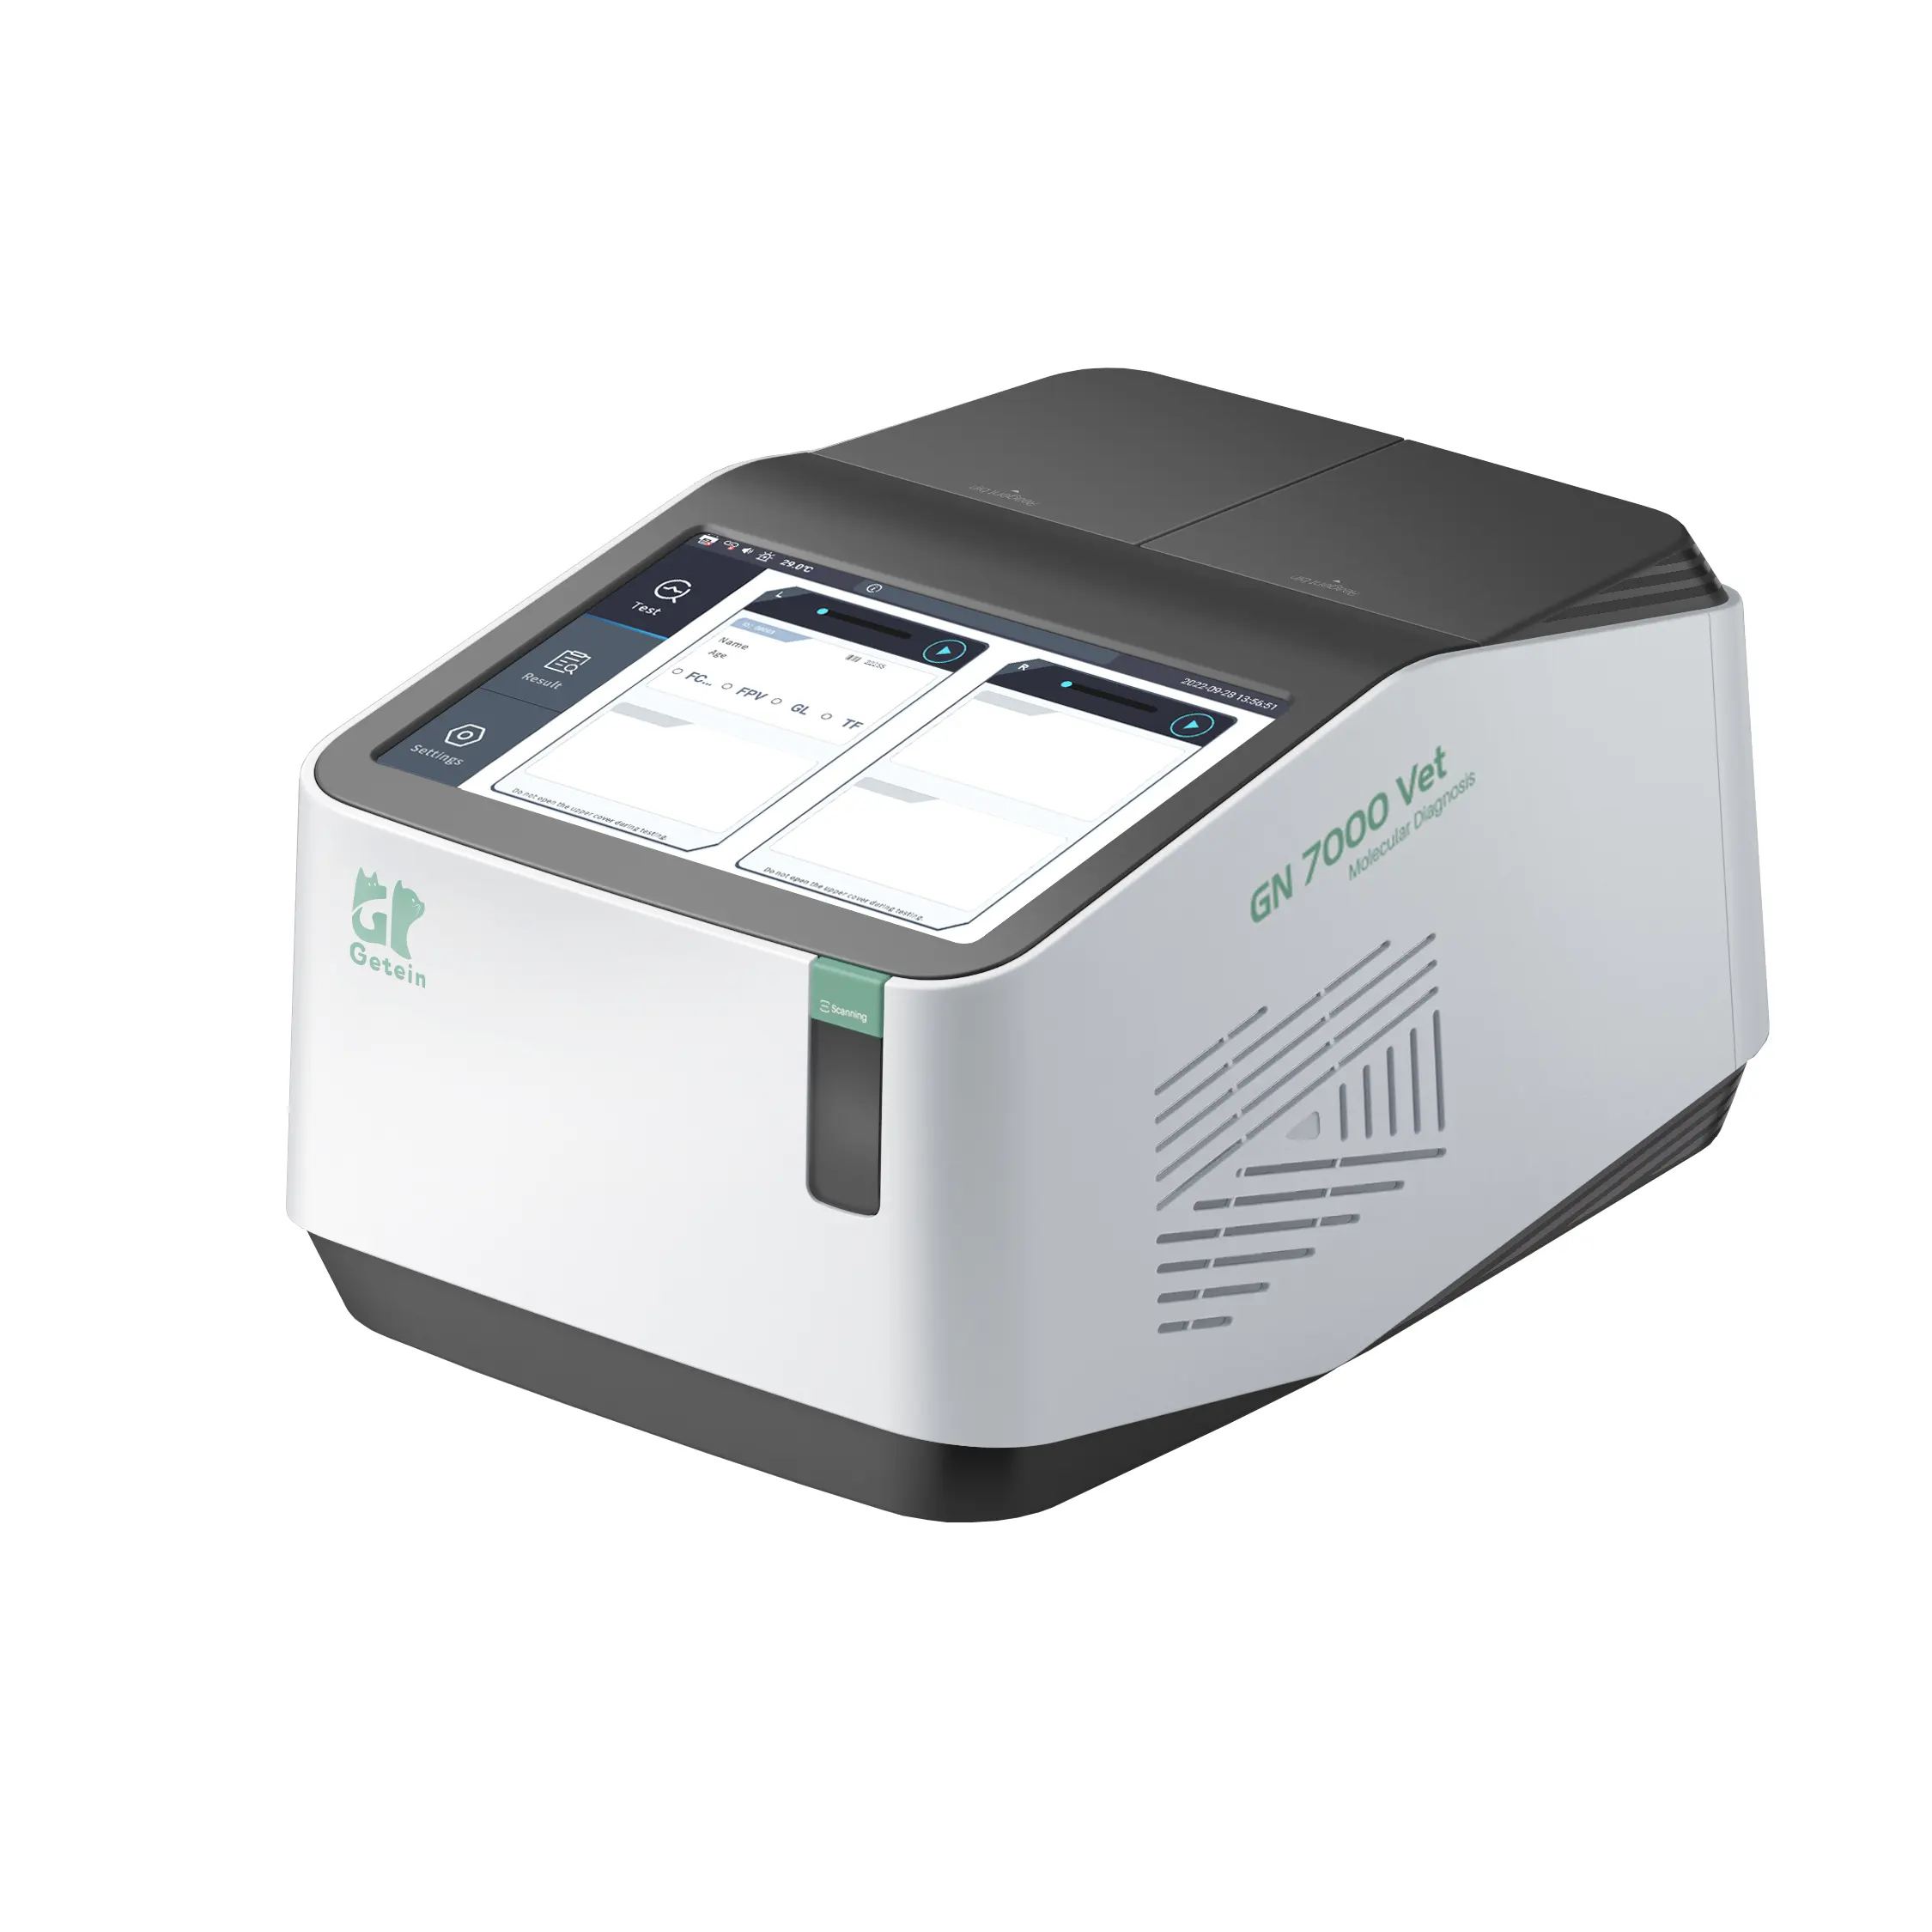 Getein 7000 Veterinary Real Time PCR System máquina de prueba de ADN PCR en tiempo real en stock